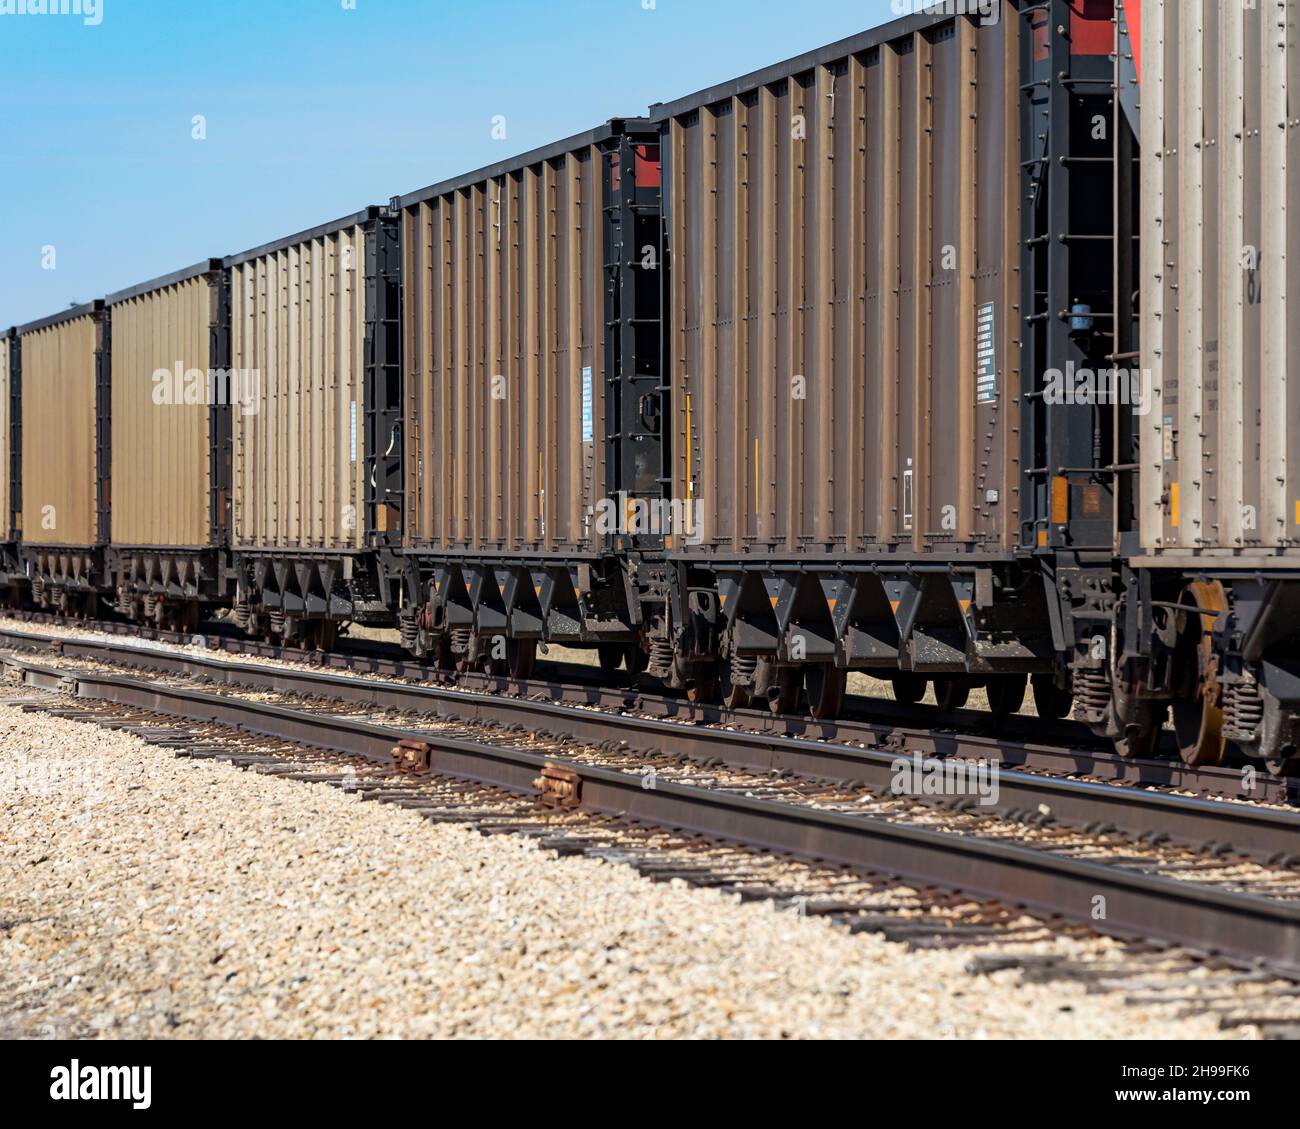 Vagoni ferroviari per il trasporto merci su binari ferroviari. Catena di approvvigionamento, trasporto ferroviario e concetto di spedizione. Foto Stock